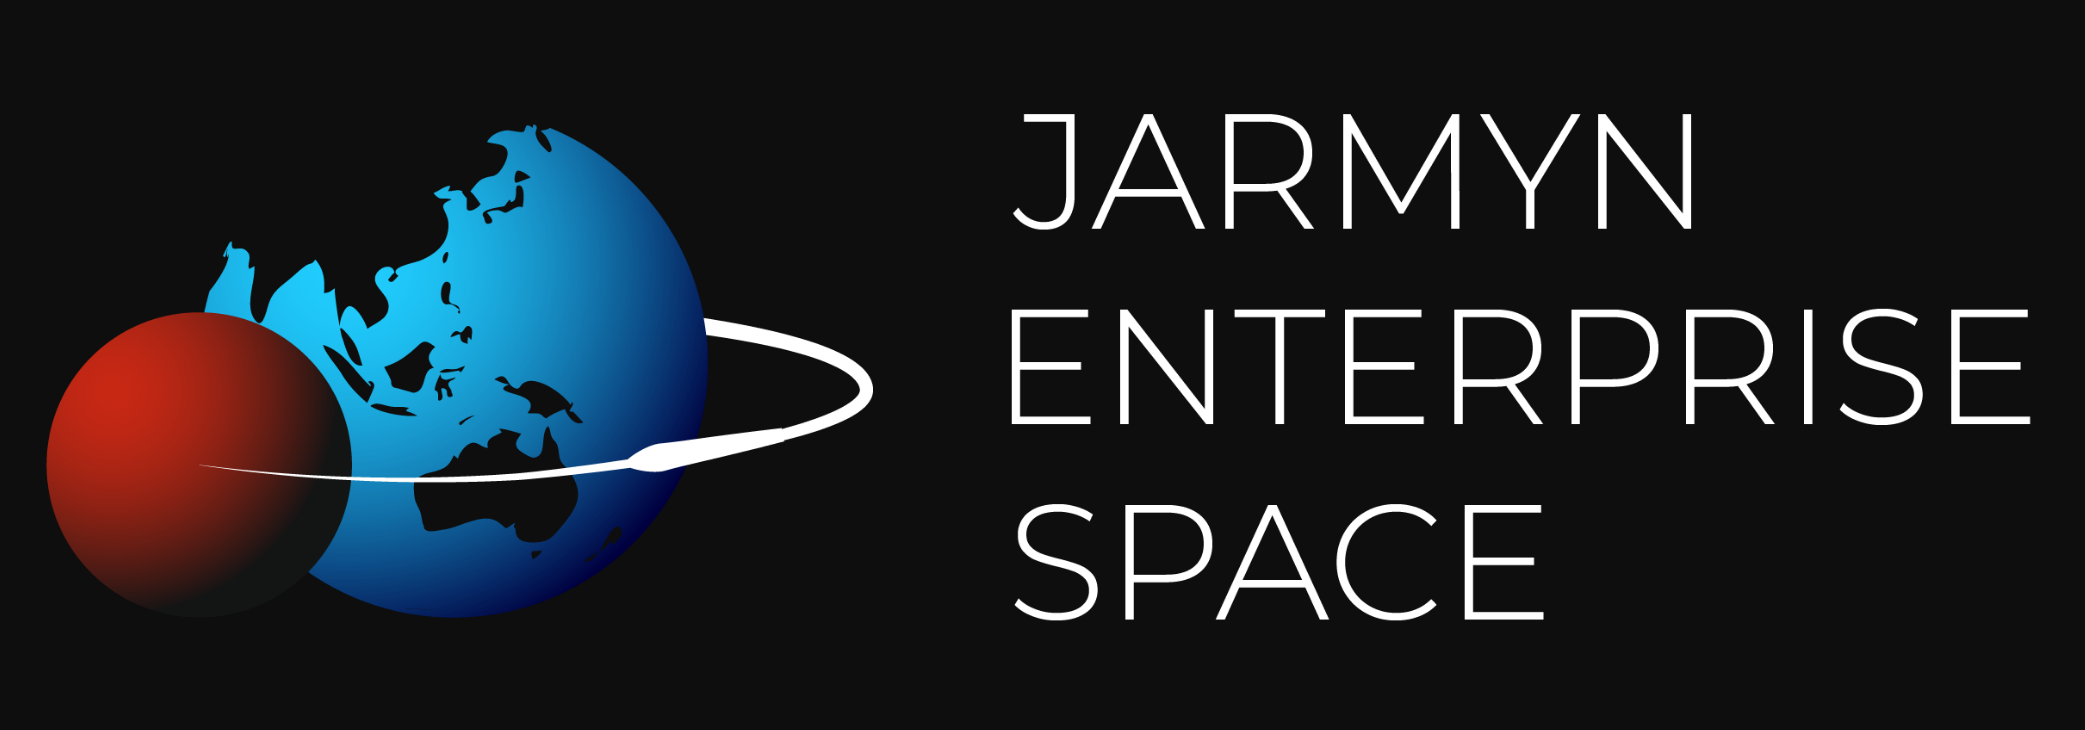 Jarmyn Enterprise Space logo